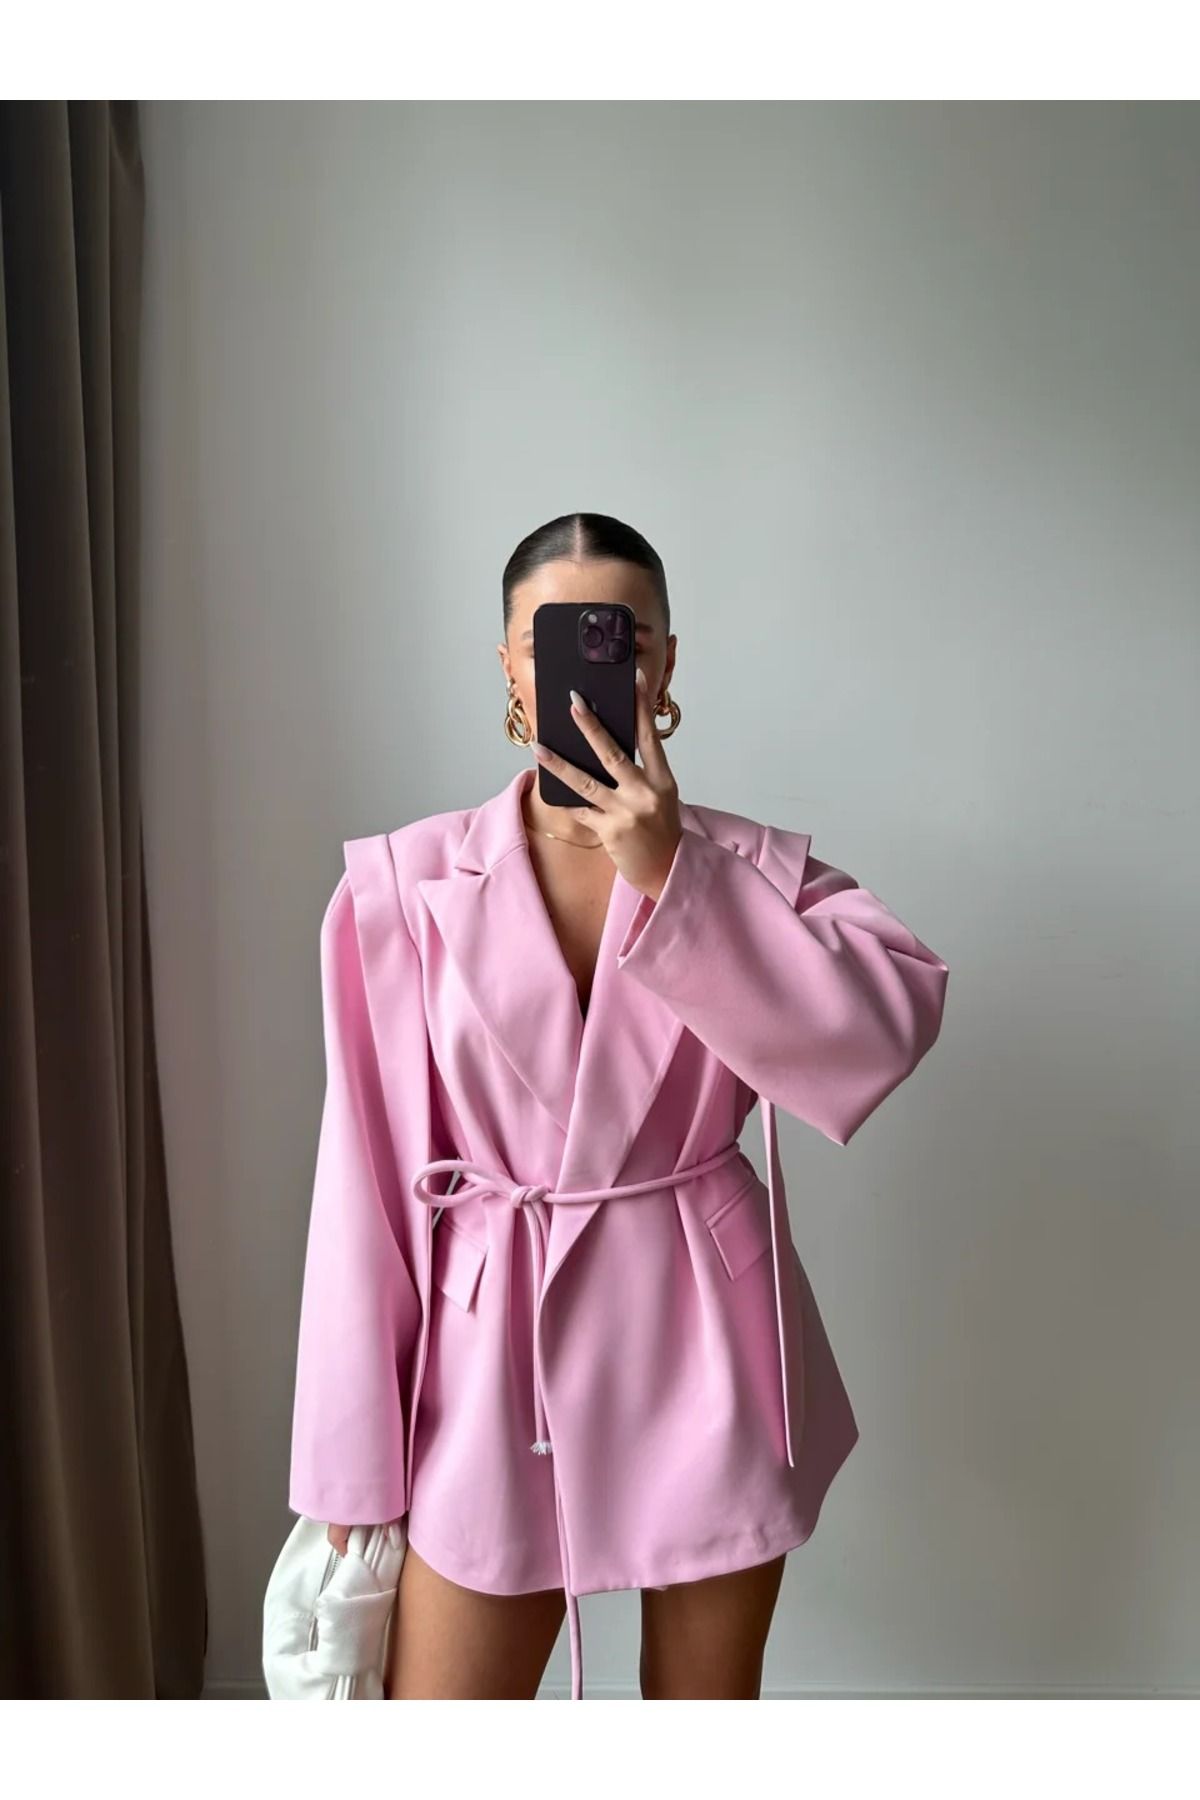 bymaestro woman Kadın Yeni Sezon Tasarım Bağlamalı Ceket